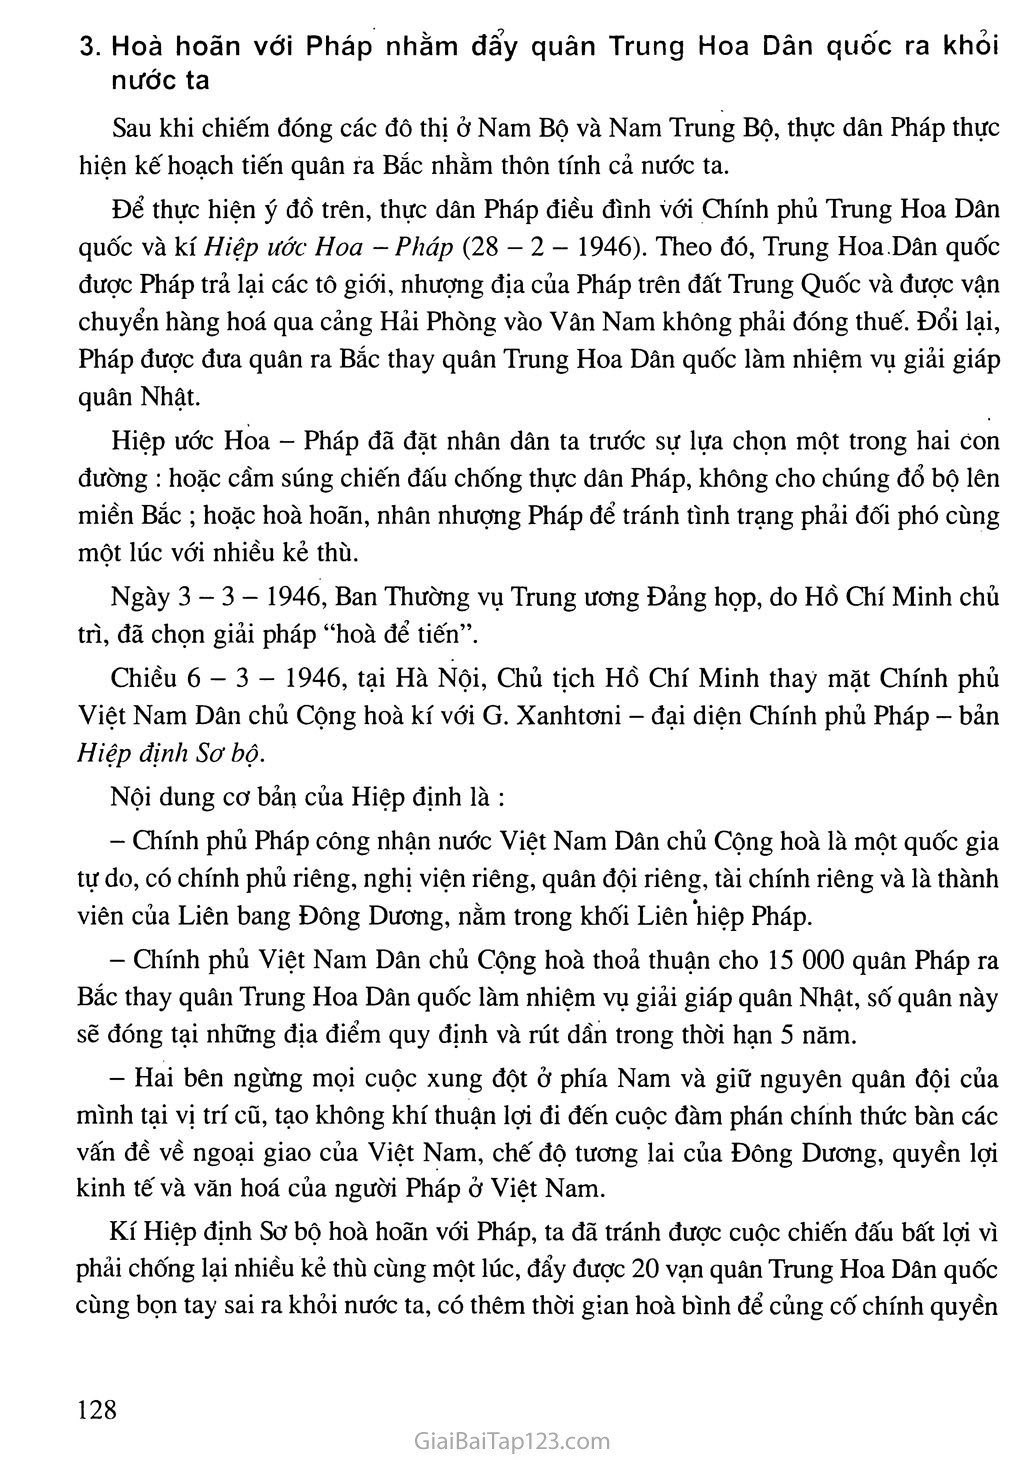 Bài 17. Nước Việt Nam Dân chủ Cộng hoà từ sau ngày 2-9-1945 đến trước ngày 19 - 12 - 1946 trang 8